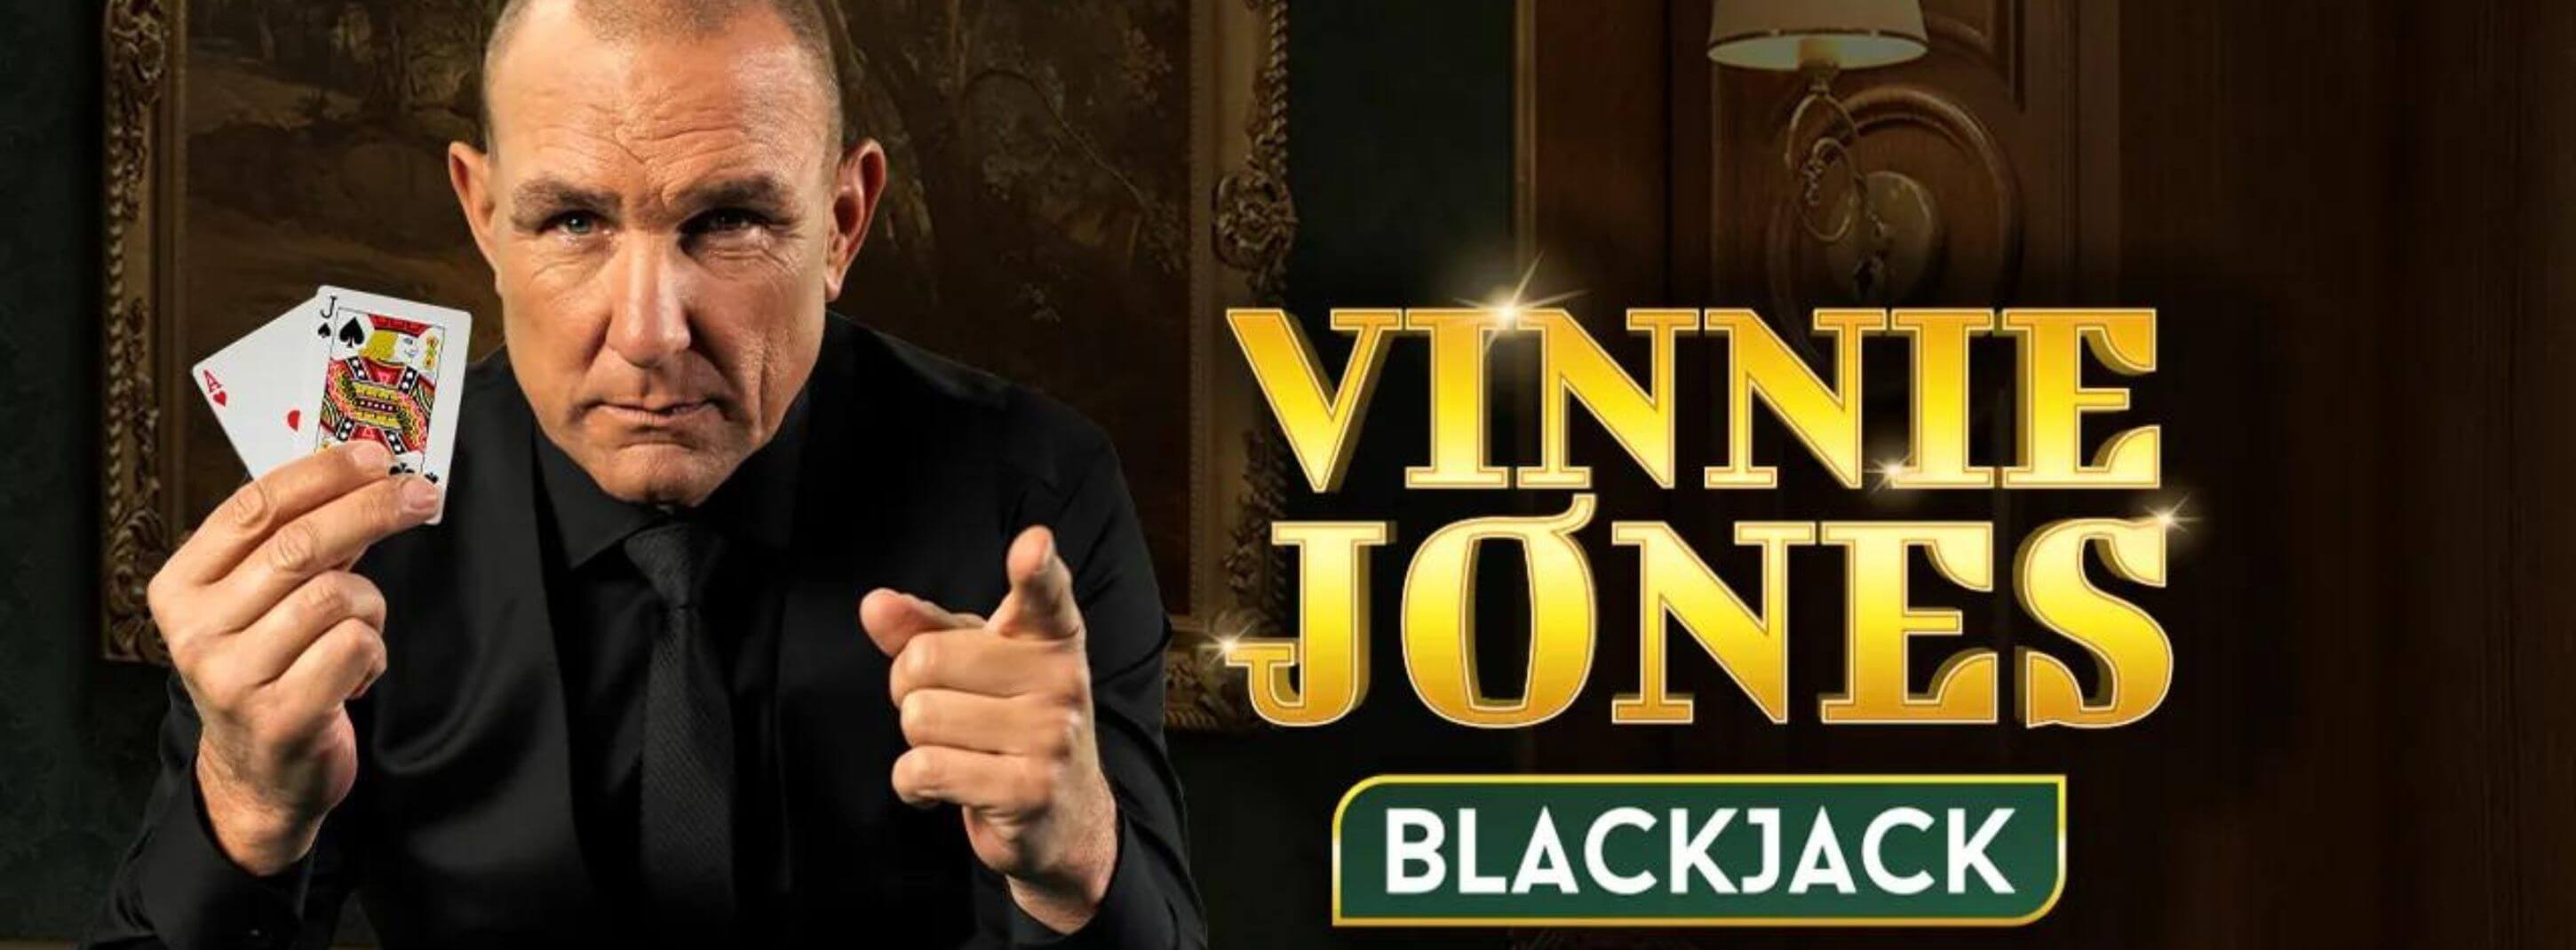 Vinnie Jones Gets Own Blackjack Game